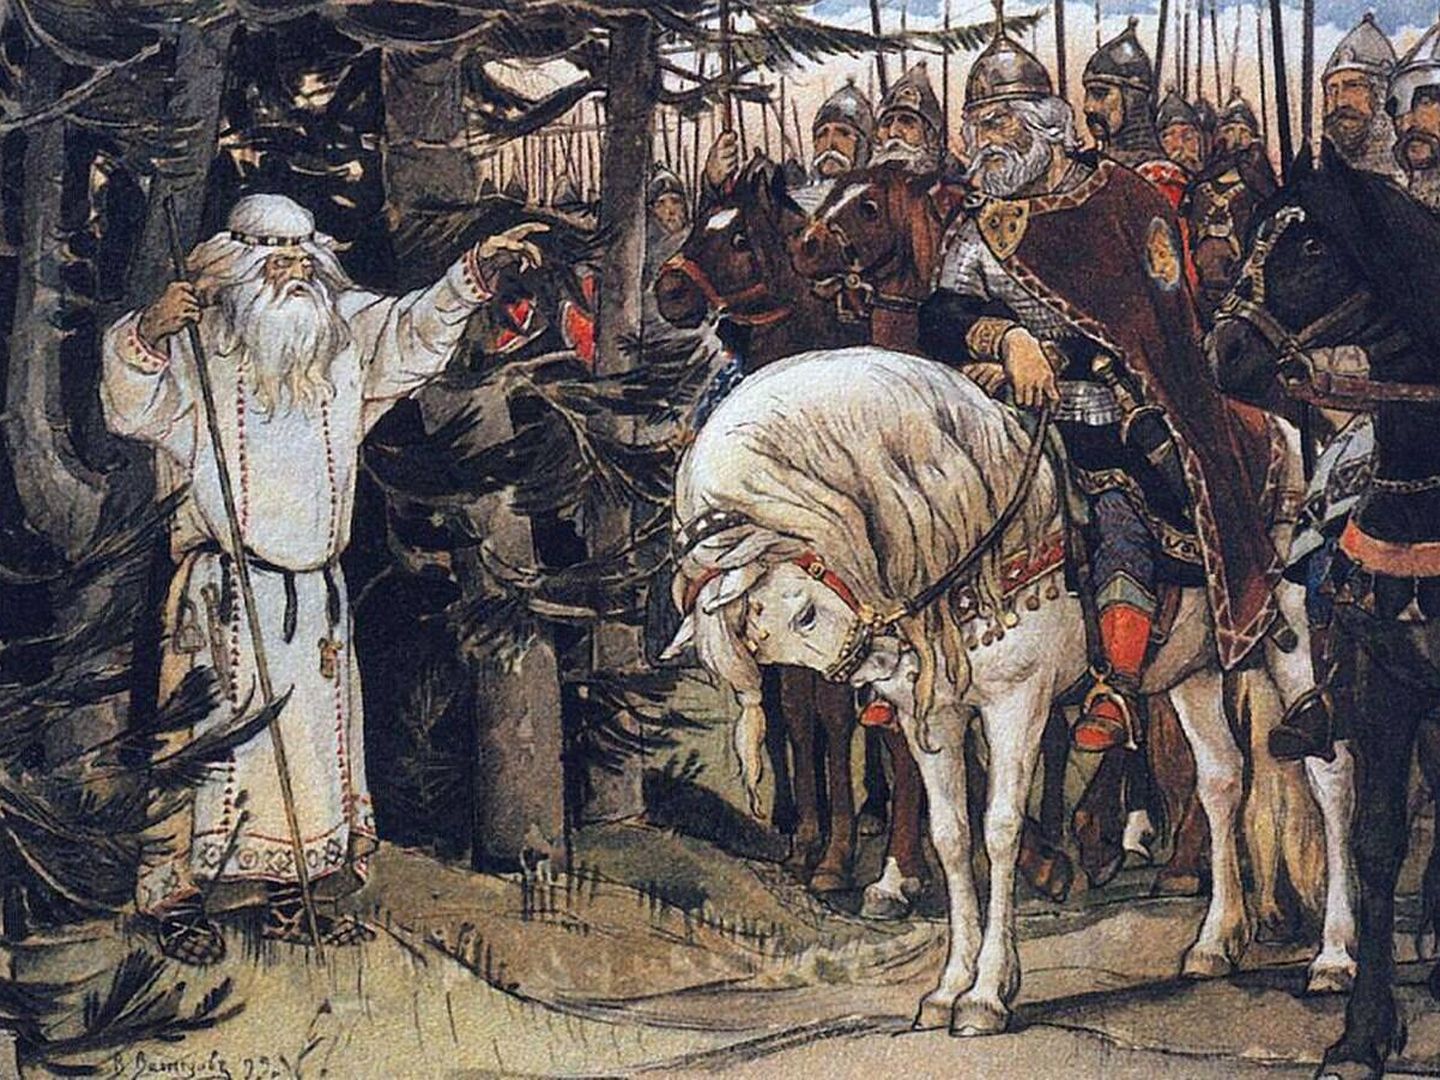 Oleg con su 'volkhv', figura clave en el intento de conquista de Constantinopla. El caballo tiene tanto protagonismo como cualquier otro en esta historia. (Pintura de Viktor Vasnetsov)